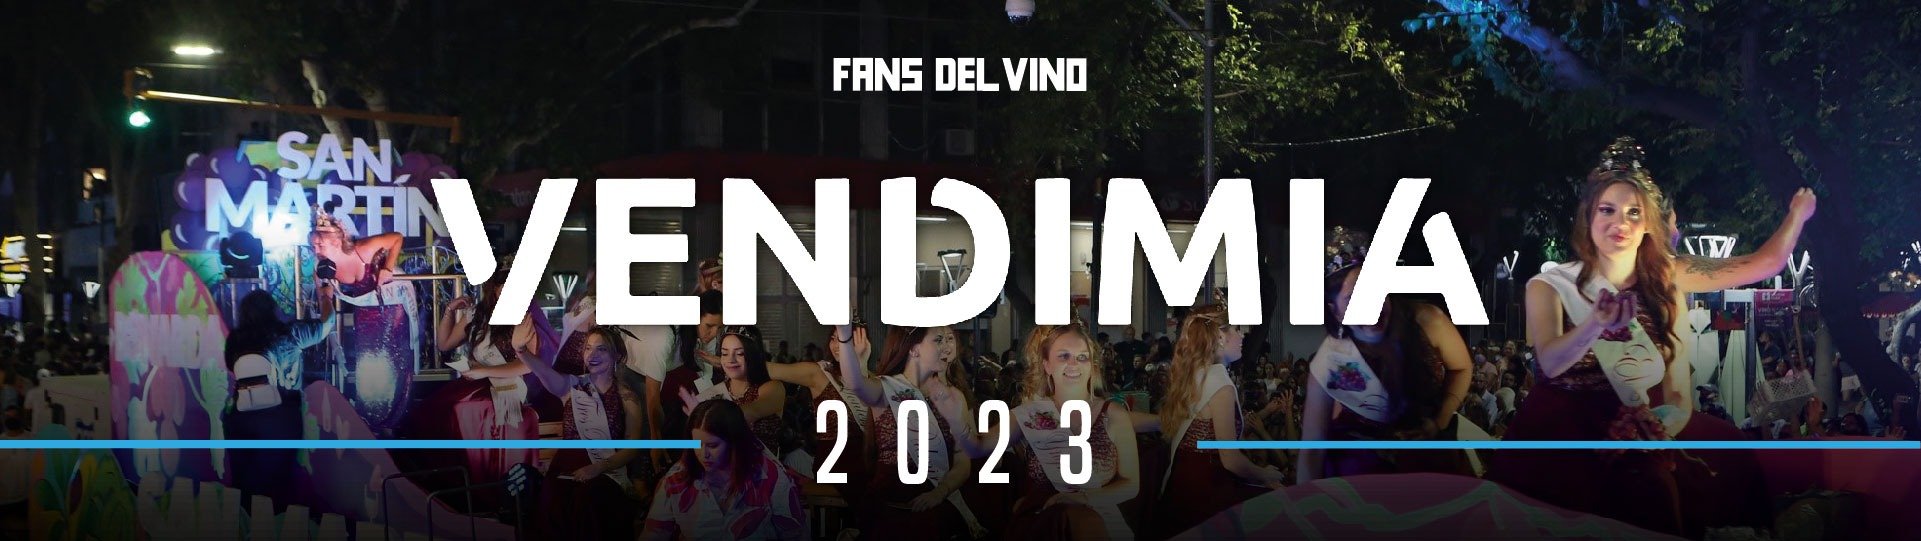 La Fiesta Nacional de la Vendimia en Mendoza: una celebración de la cultura del vino